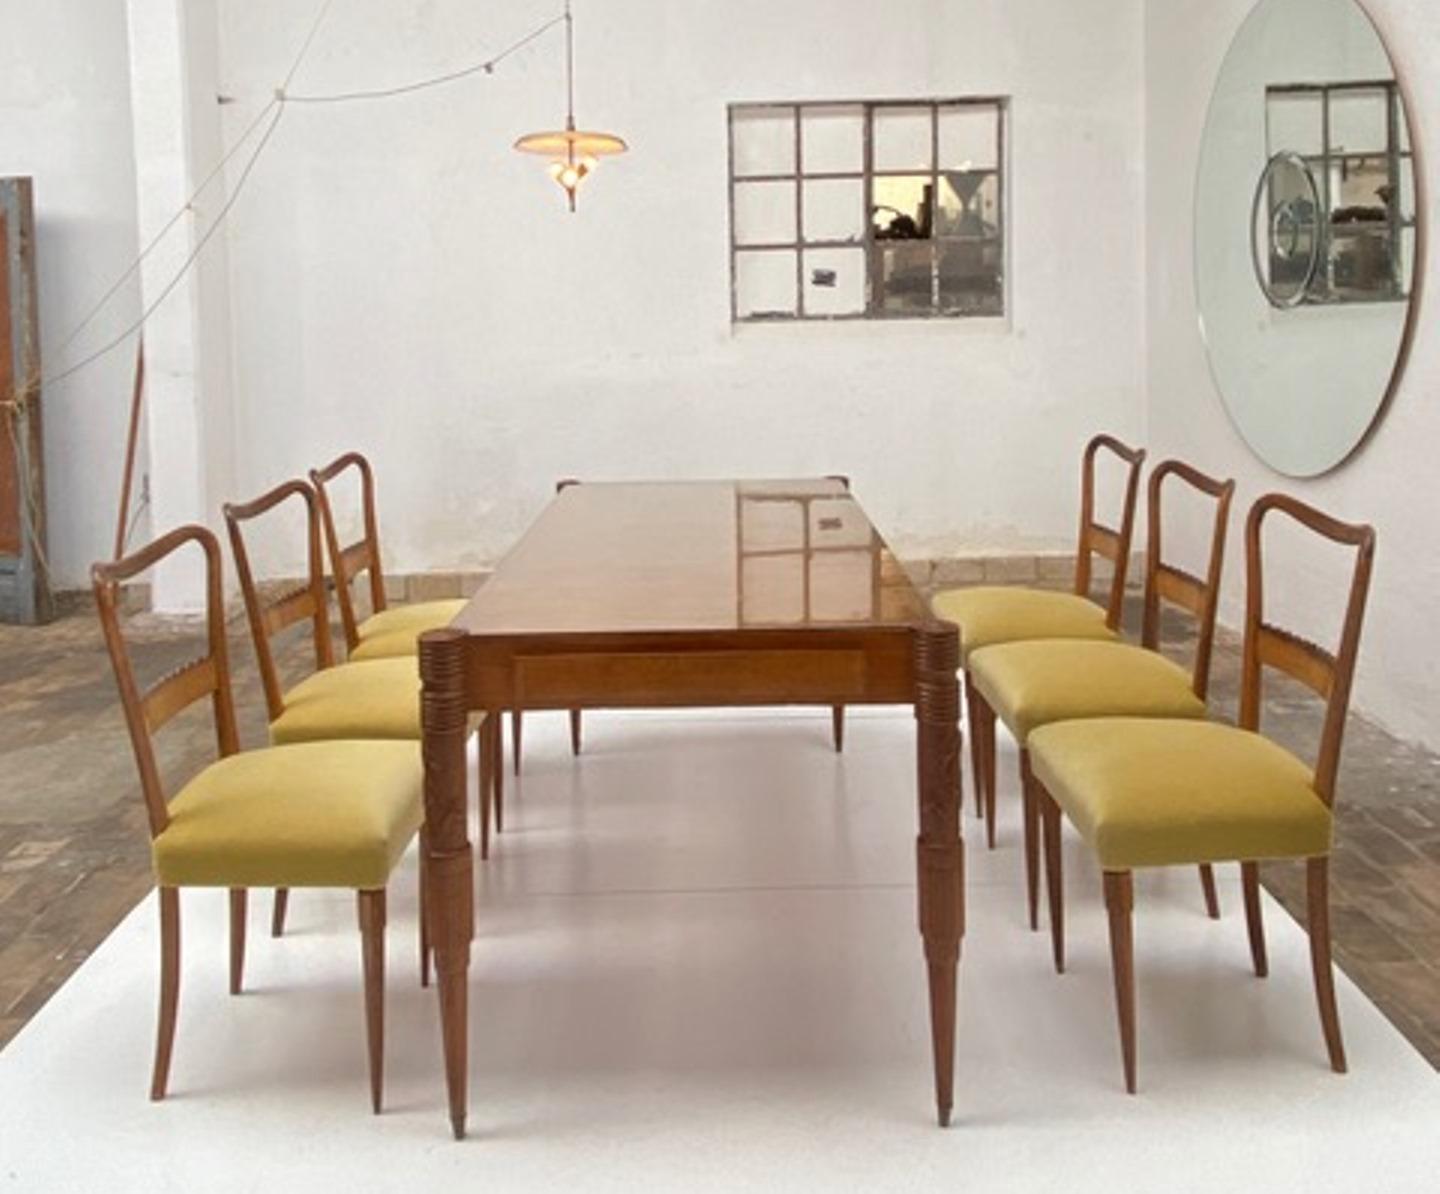 Superbe table de salle à manger en noyer et six chaises de salle à manger assorties de Pier Luigi Colli, fabriquées à la main par le célèbre atelier Fratelli Marelli à Cantu, en Italie, vers 1950. 

La table de salle à manger est fabriquée en